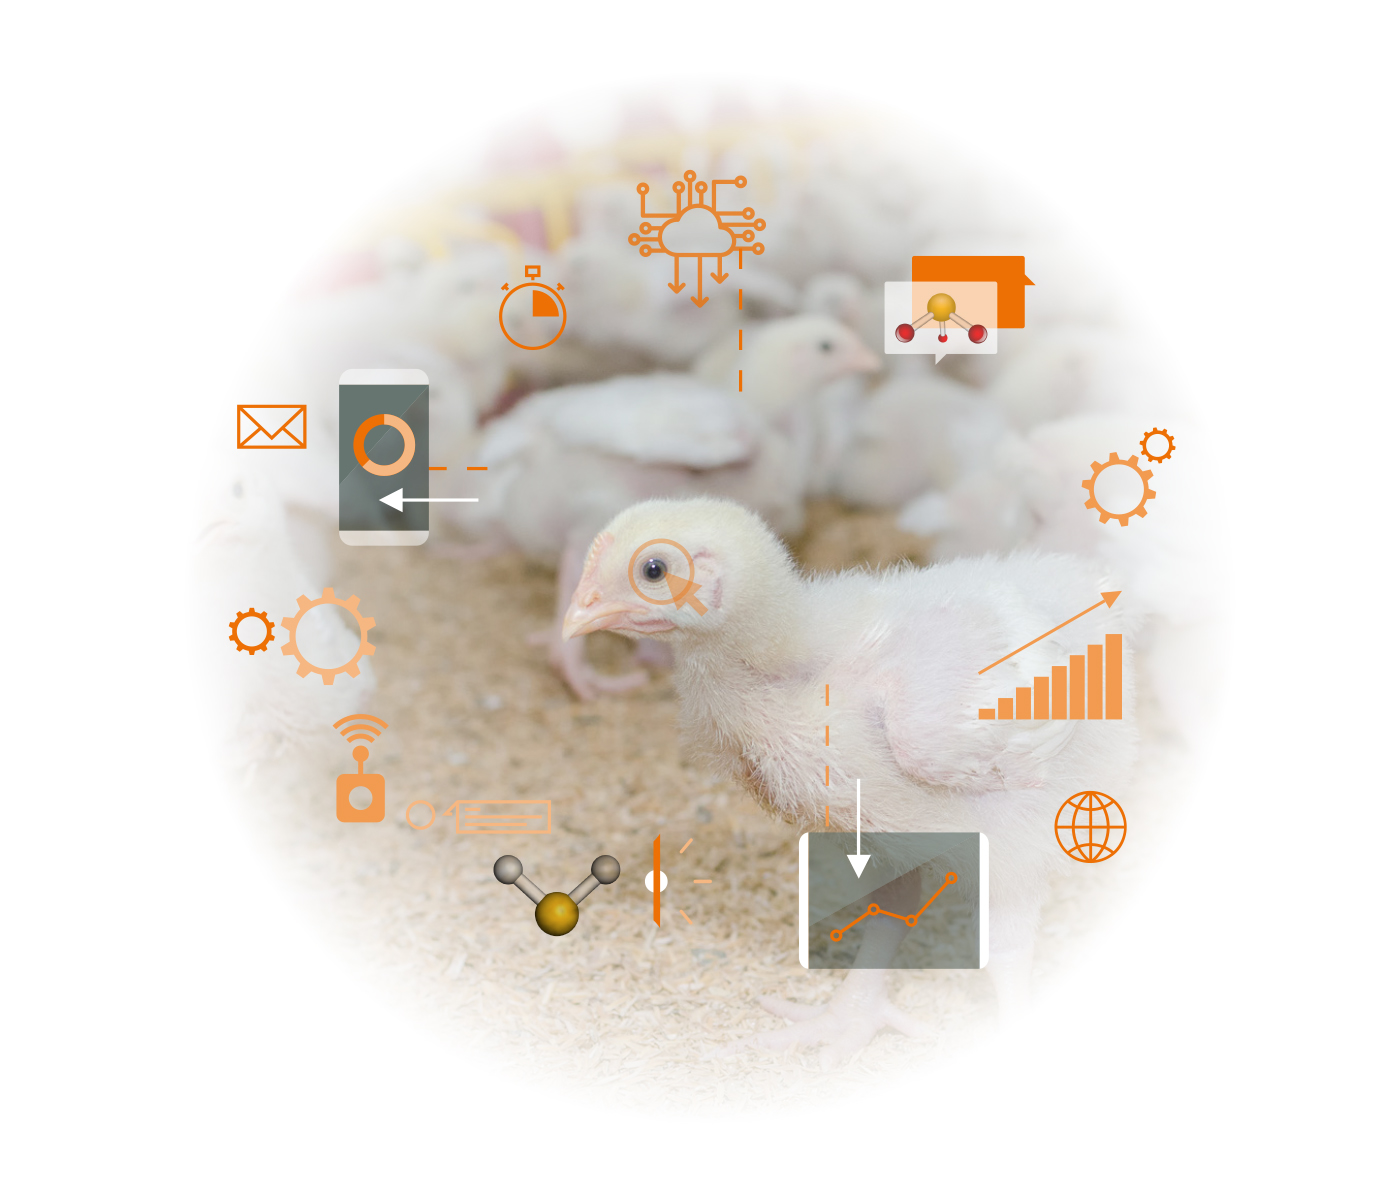 Gases nocivos emitidos por granjas avícolas: ¿Cómo disminuir el impacto sobre rendimiento y salud de las aves?